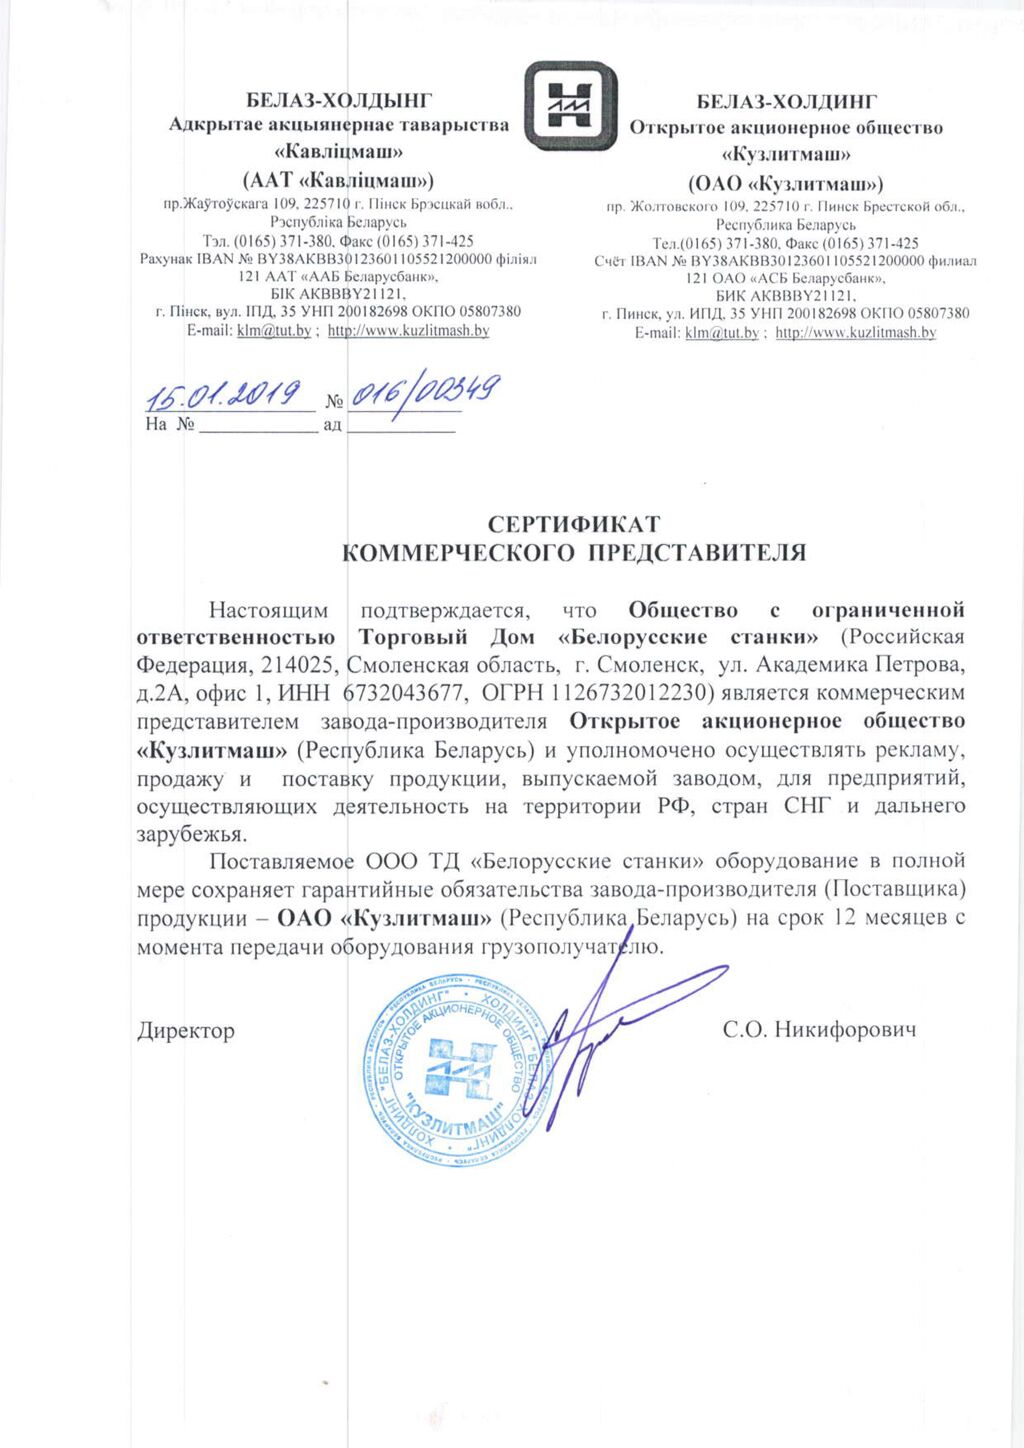 Сертификат дилера ОАО "Кузлитмаш"